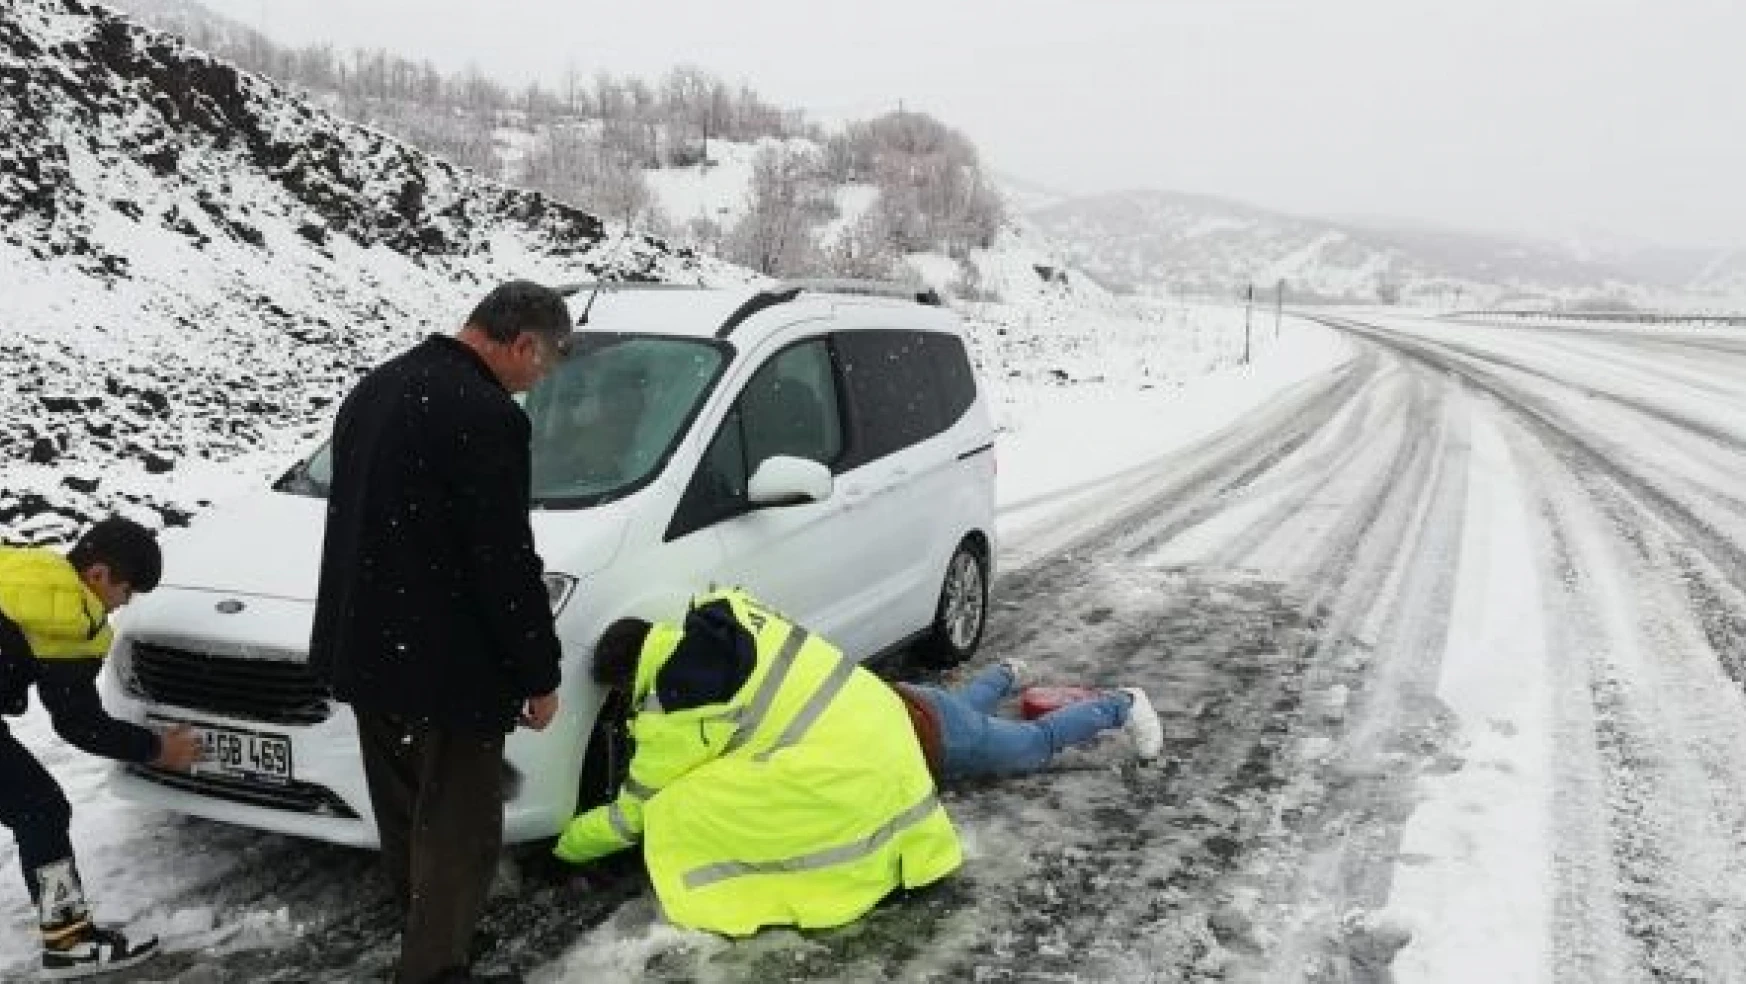 Kar nedeniyle yolda kalan ailenin imdadına polis yetişti